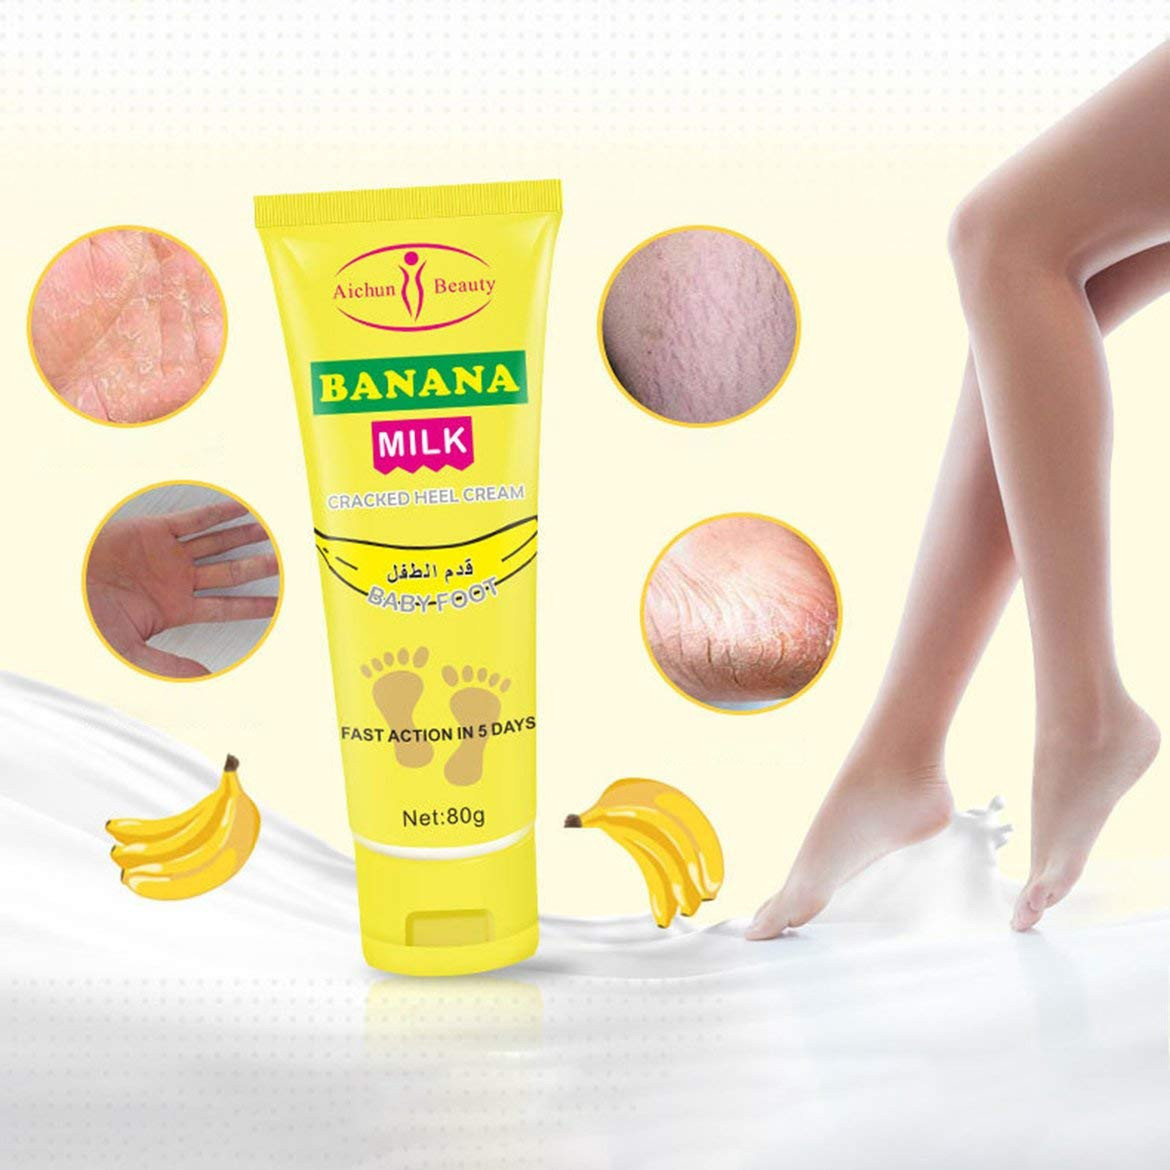 Banana Milk Cracked Heel Cream 2 in 1 Pack